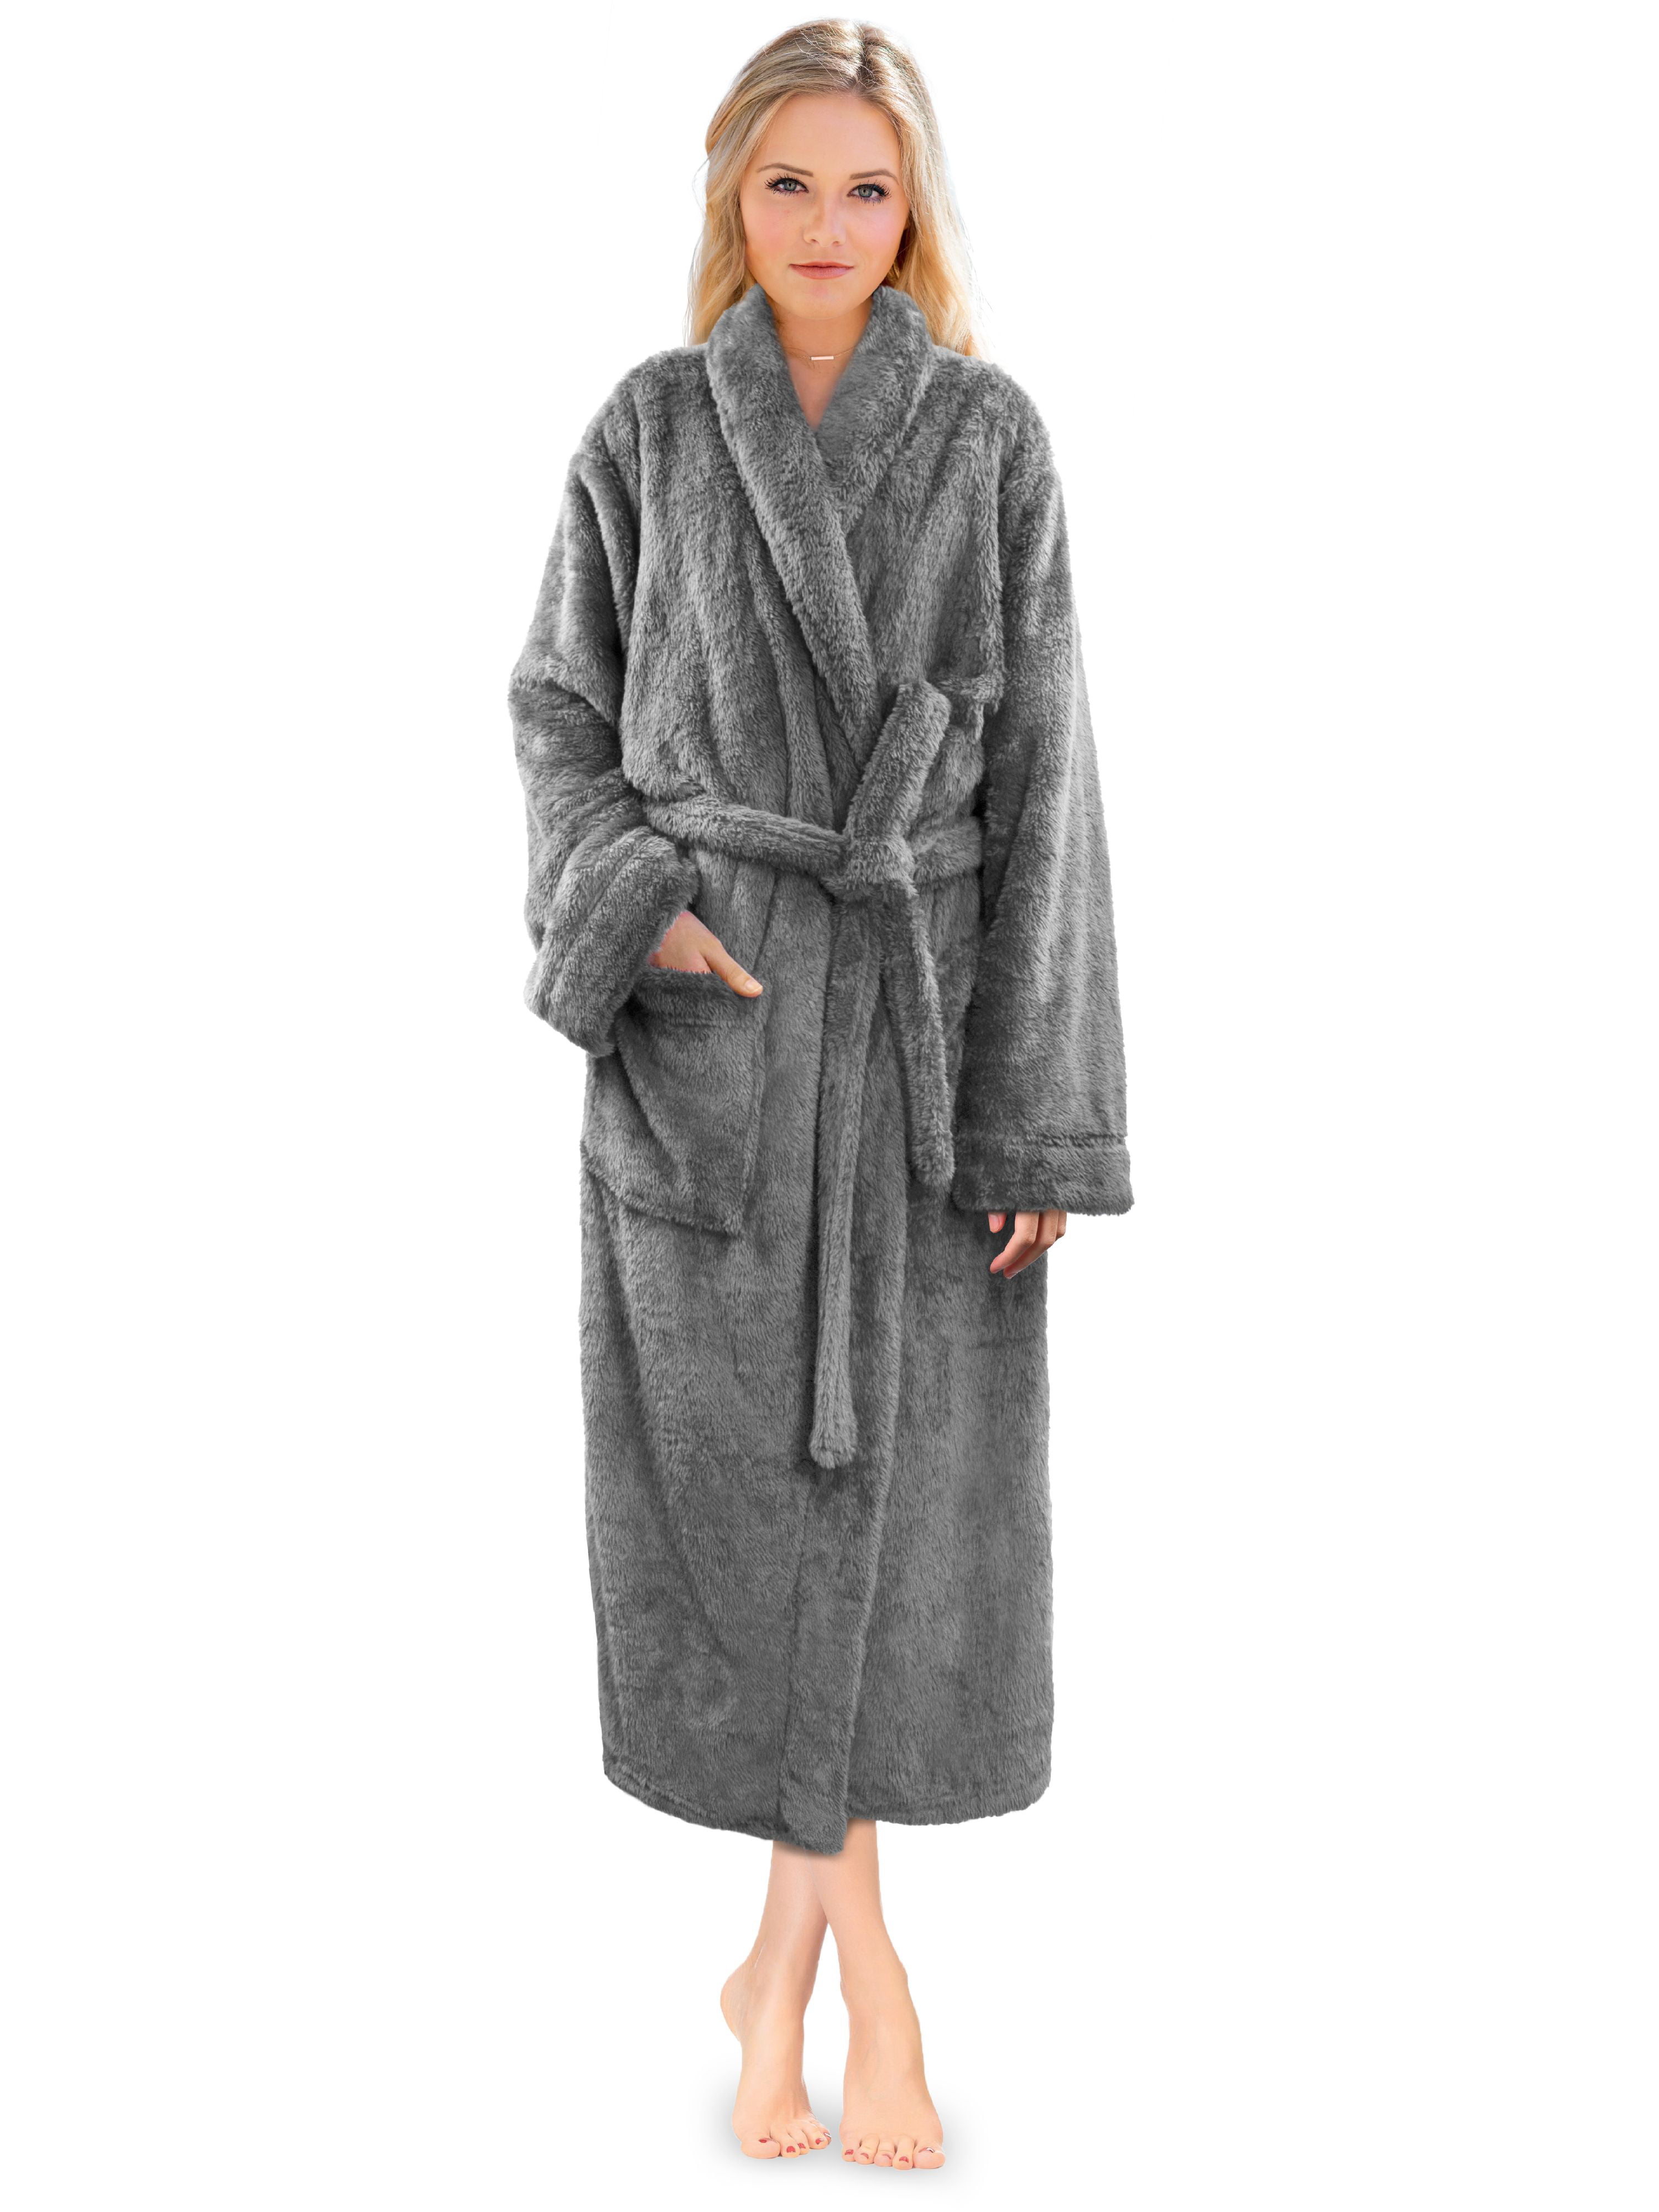 Boys and Girls Fluffy Hooded Robe Plush Microfleece Bathrobe Soft Warm Made in Turkey